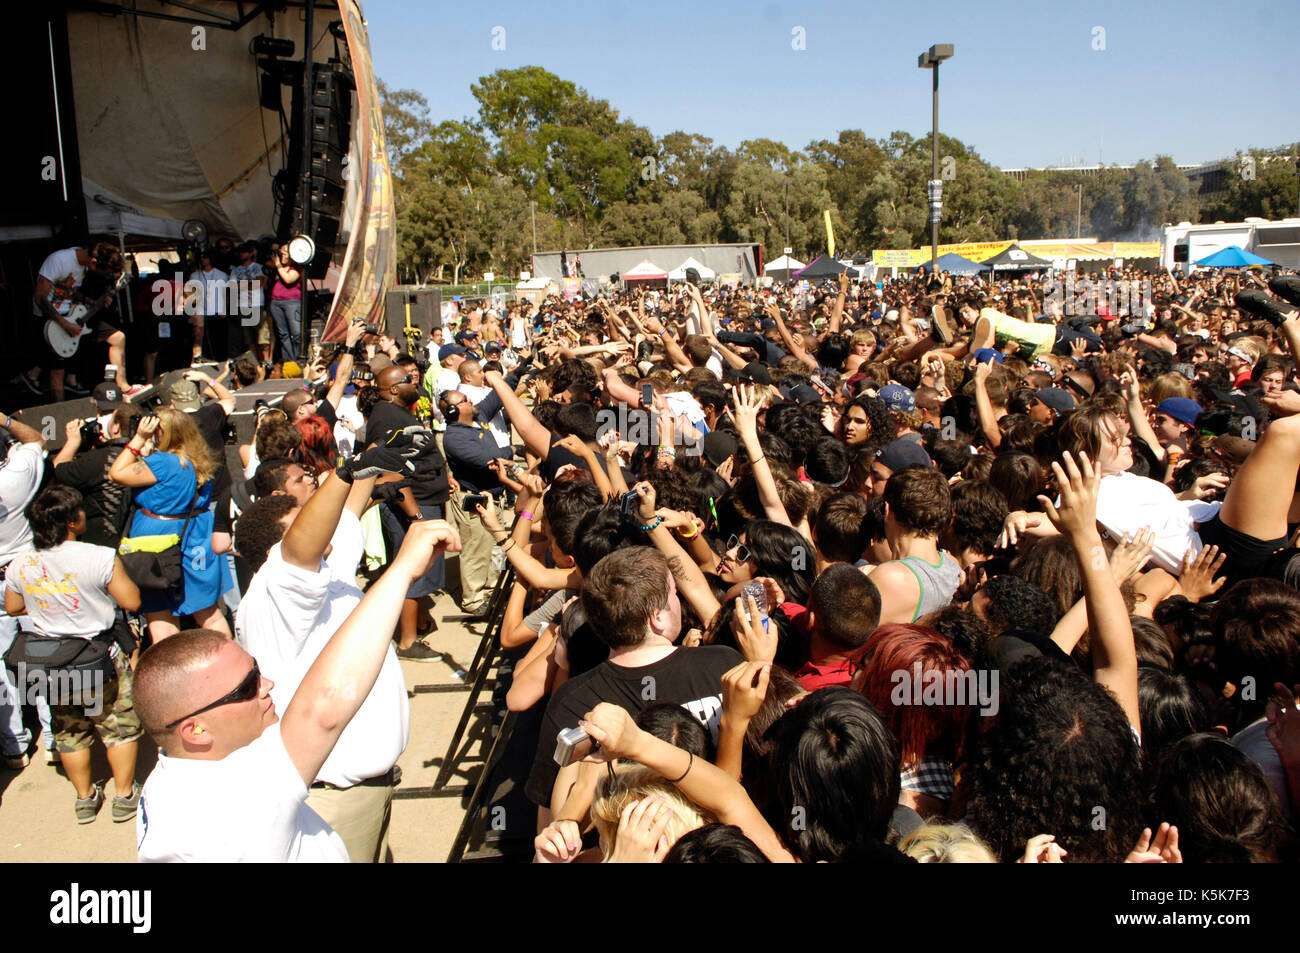 Atmosphere crowd 2009 Vans Warped Tour 